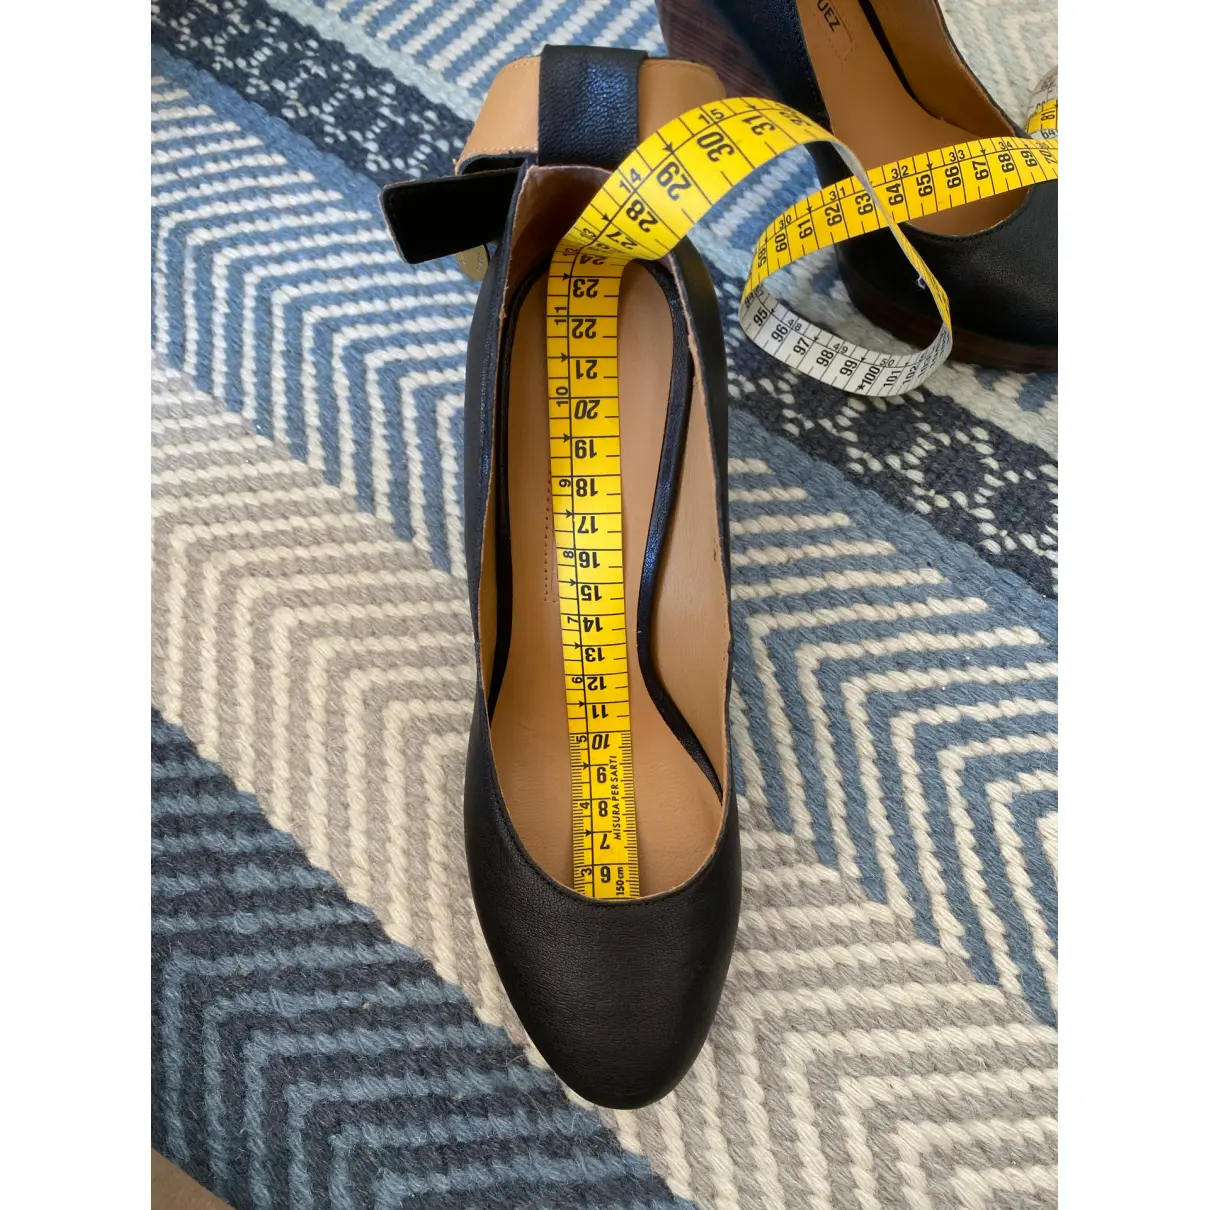 Leather heels Adolfo Dominguez